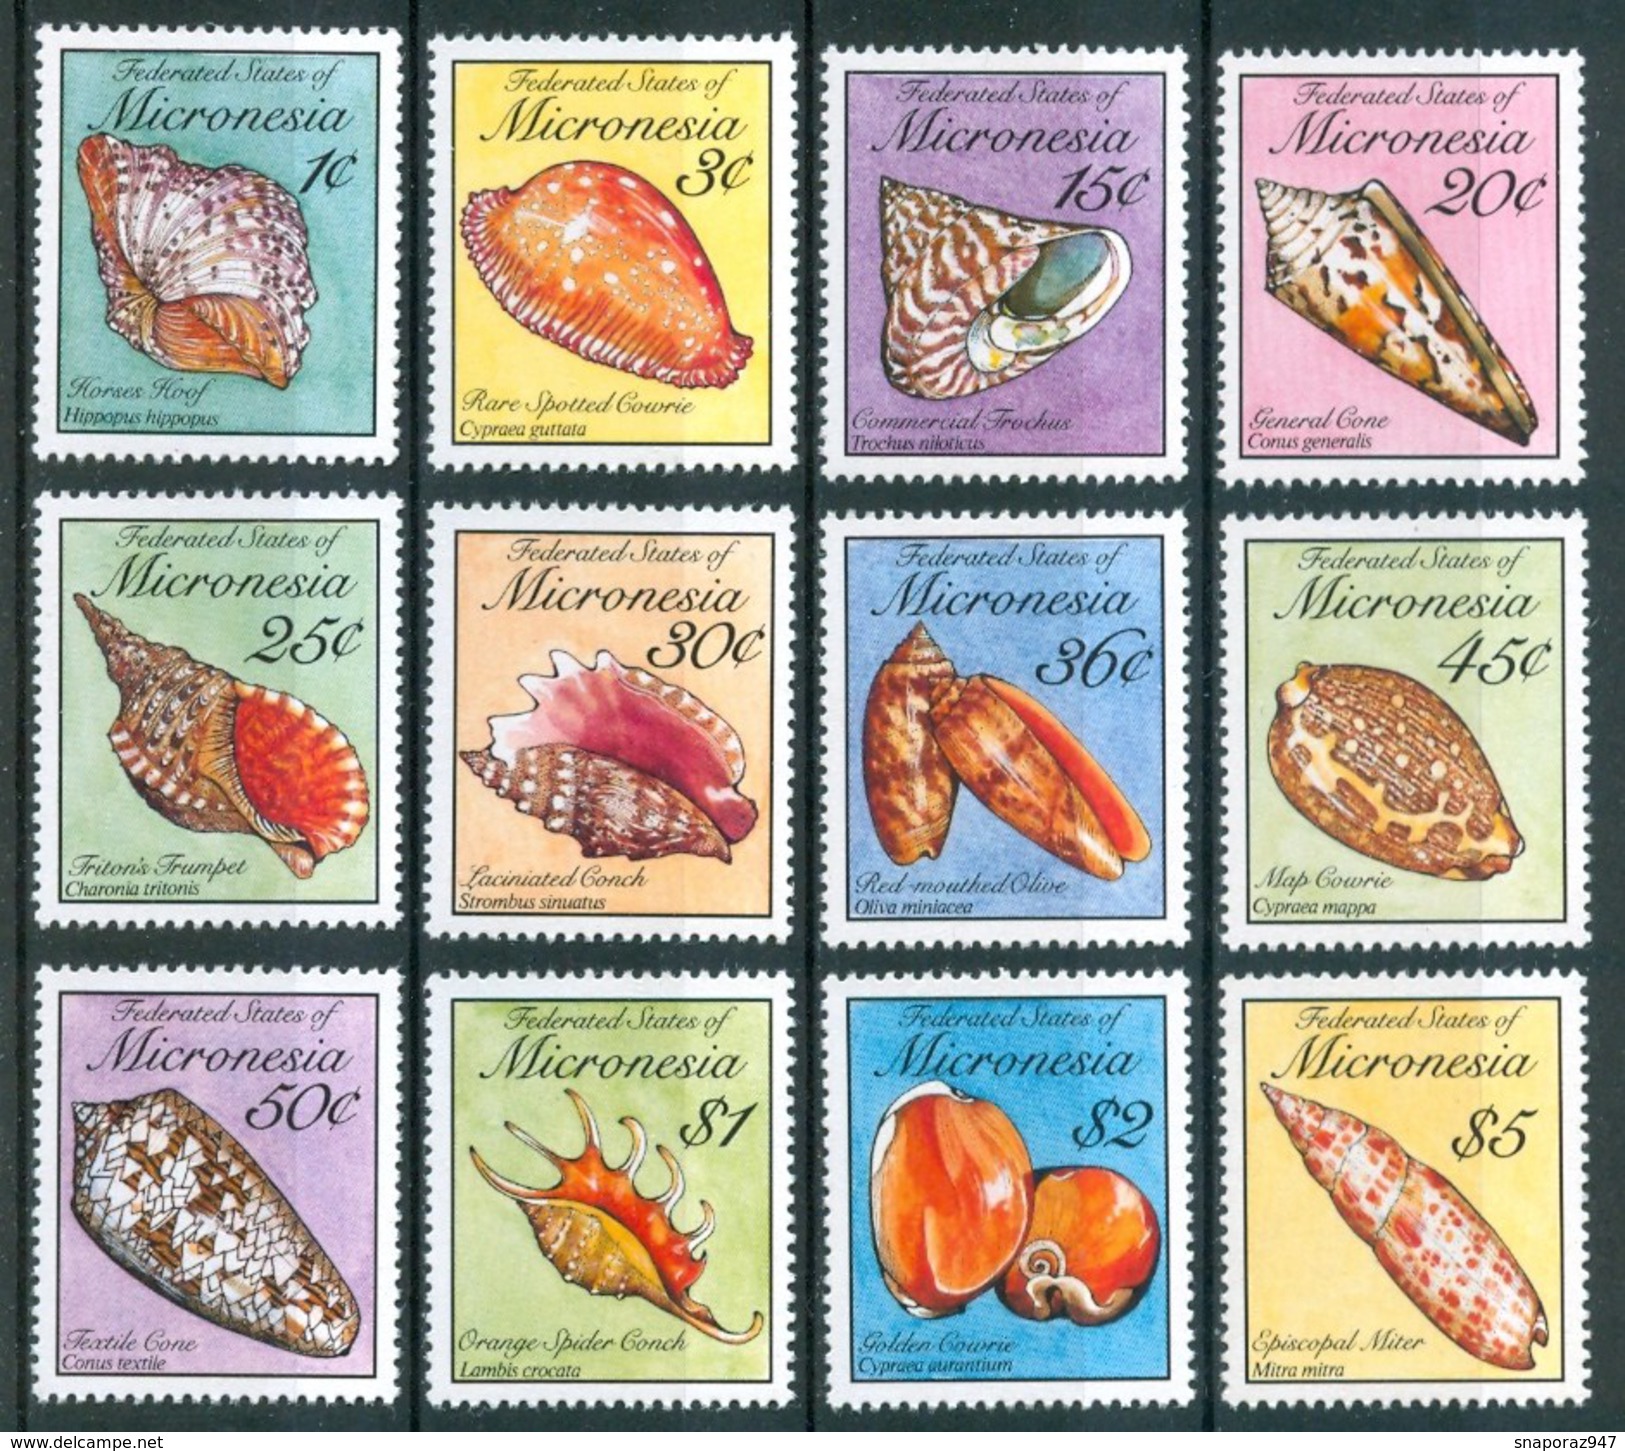 1989 Micronesia Conchiglie Shells Coquilles Set MNH** Fo58 - Conchiglie